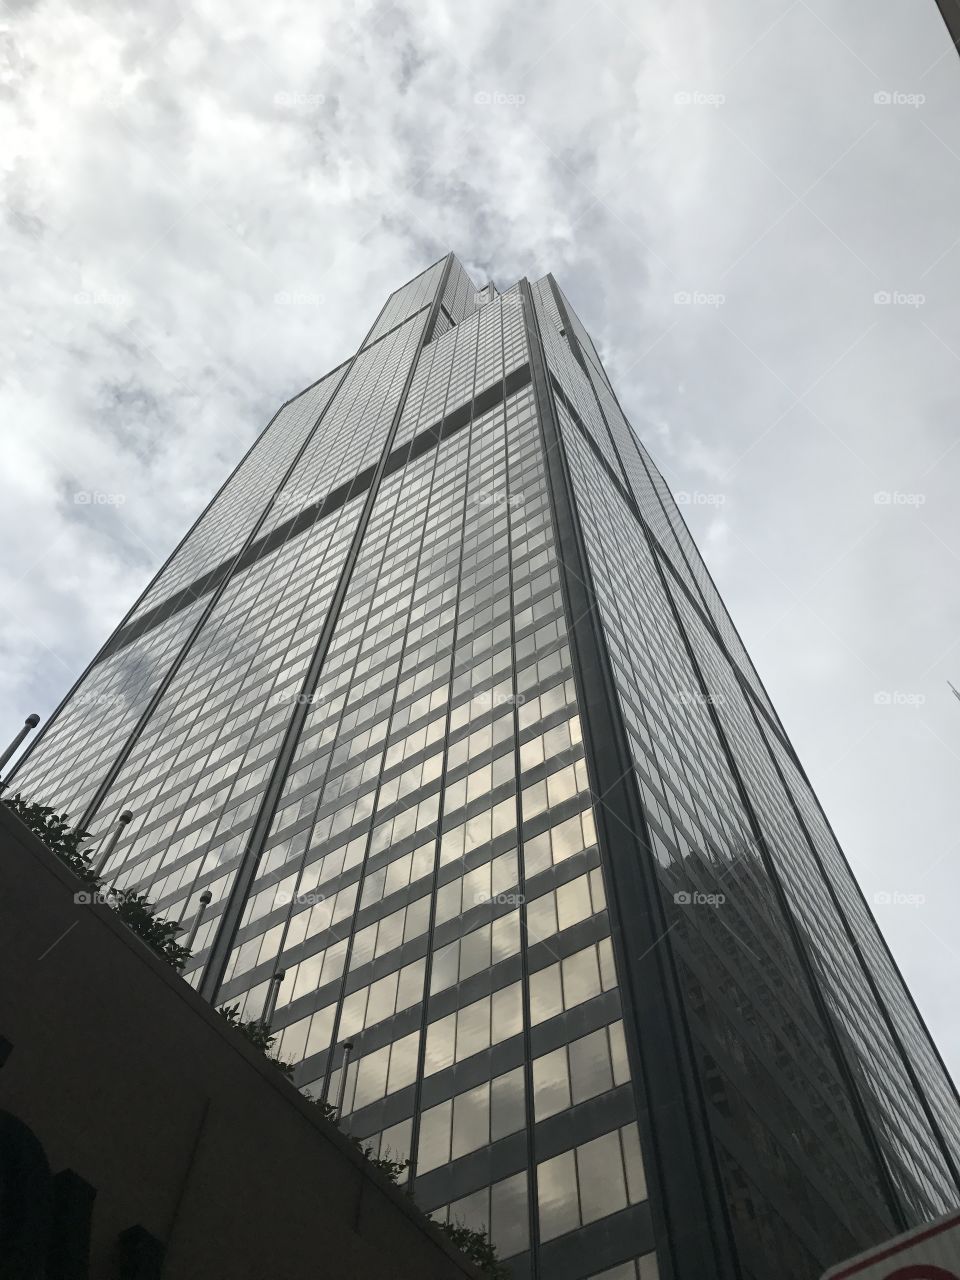 Willis tower